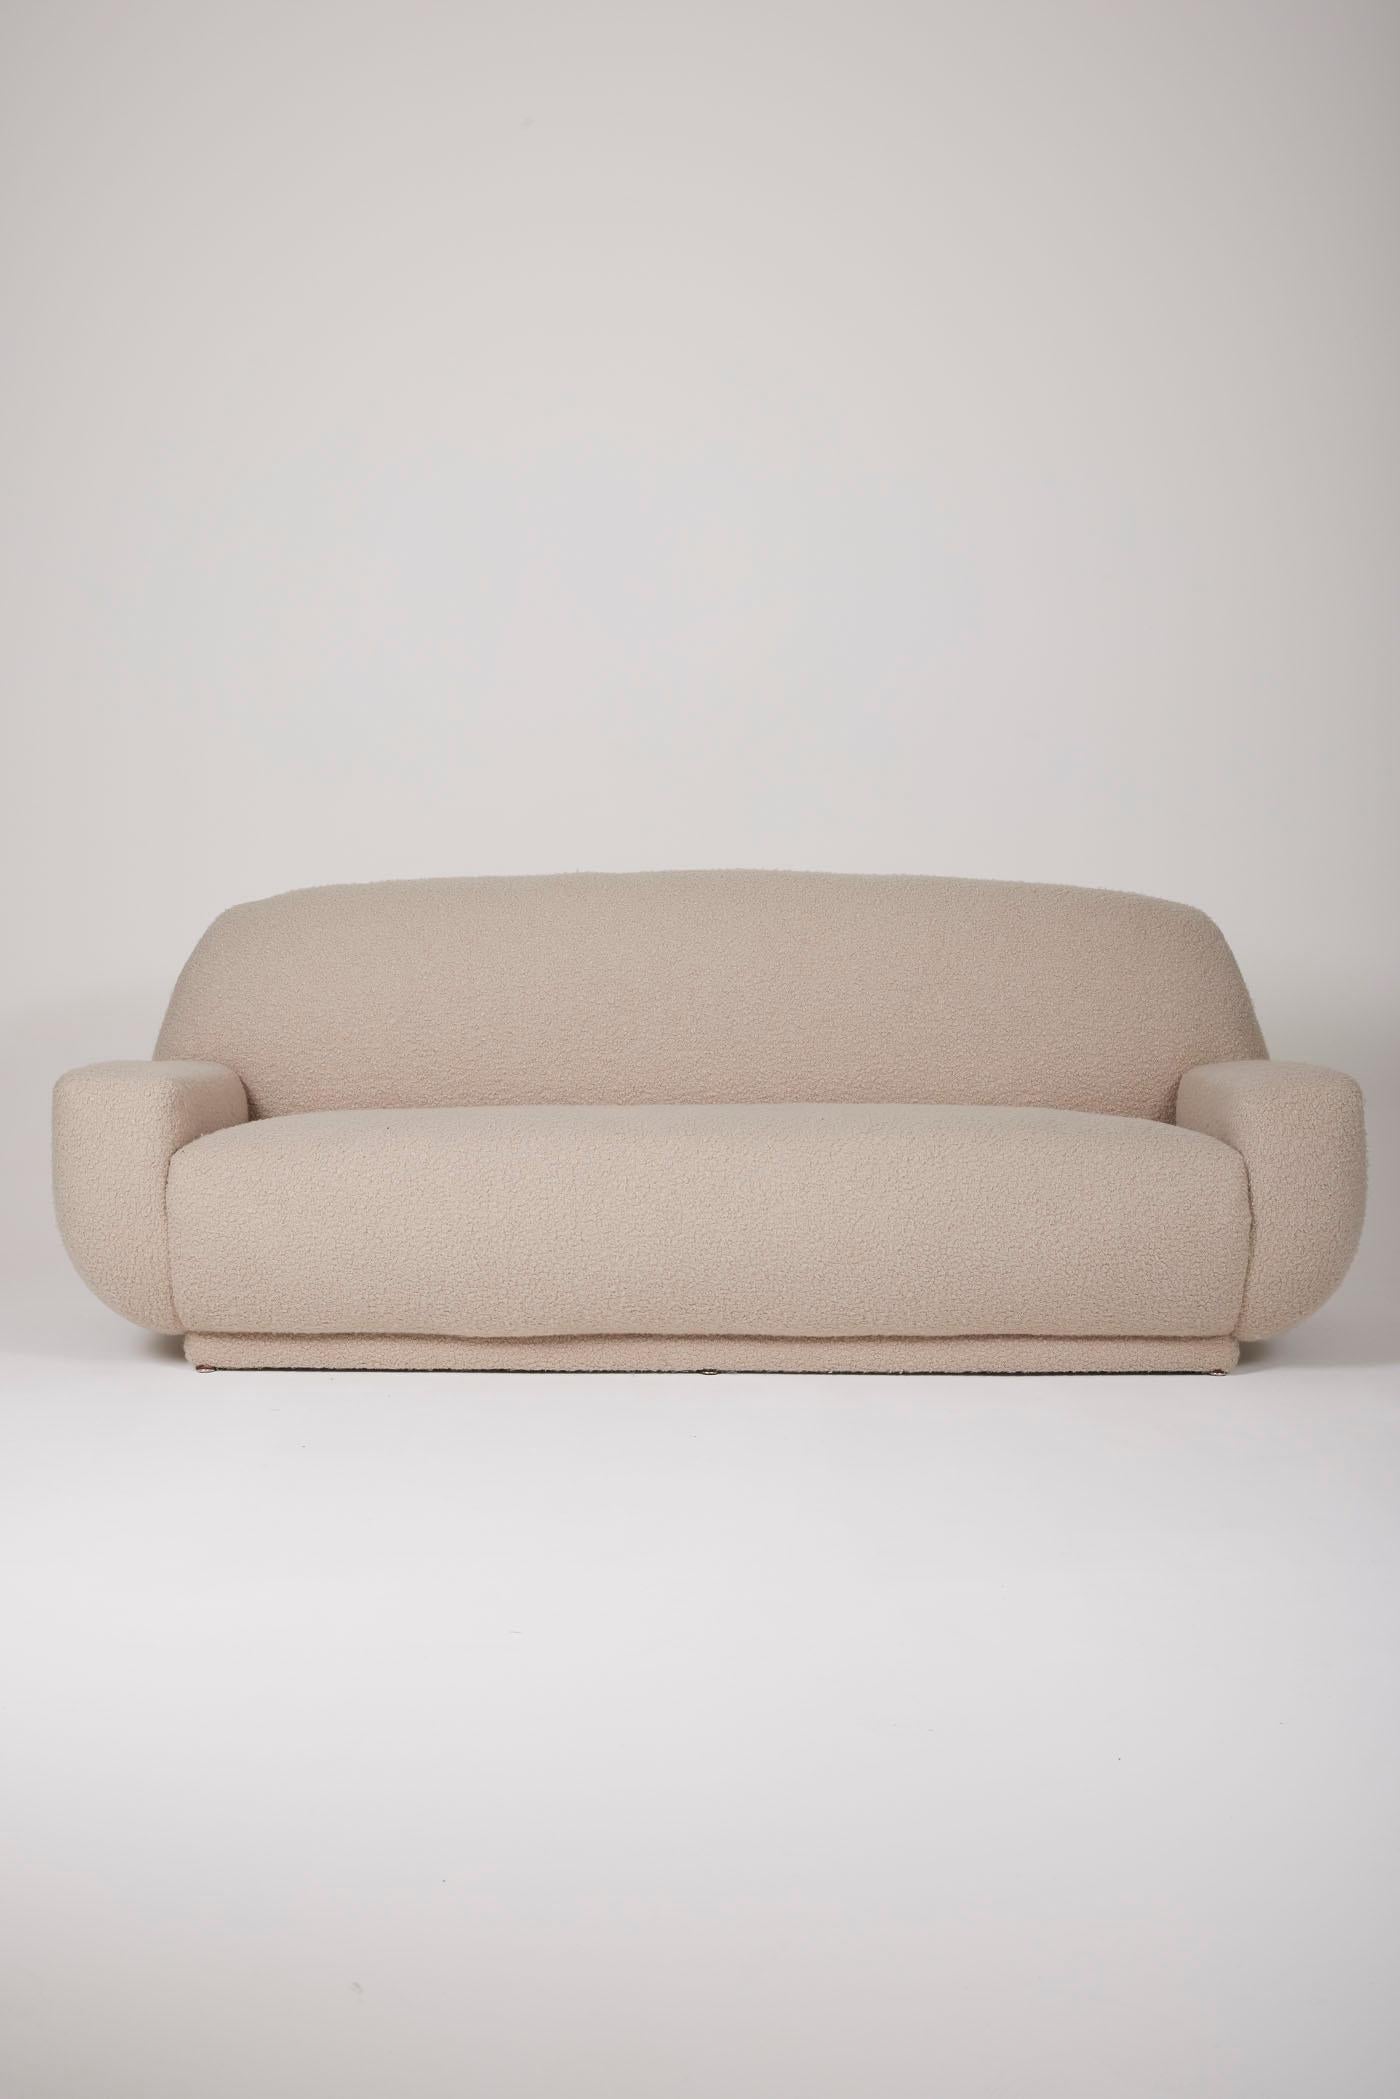 Dieses graue italienische Sofa ist von den 70er Jahren inspiriert und verbindet mit seinem grauen Bouclé-Stoff italienischen Stil und Komfort. Verleihen Sie Ihrer Einrichtung mit diesem hochwertigen Produkt einen Hauch von Raffinesse.
DV1